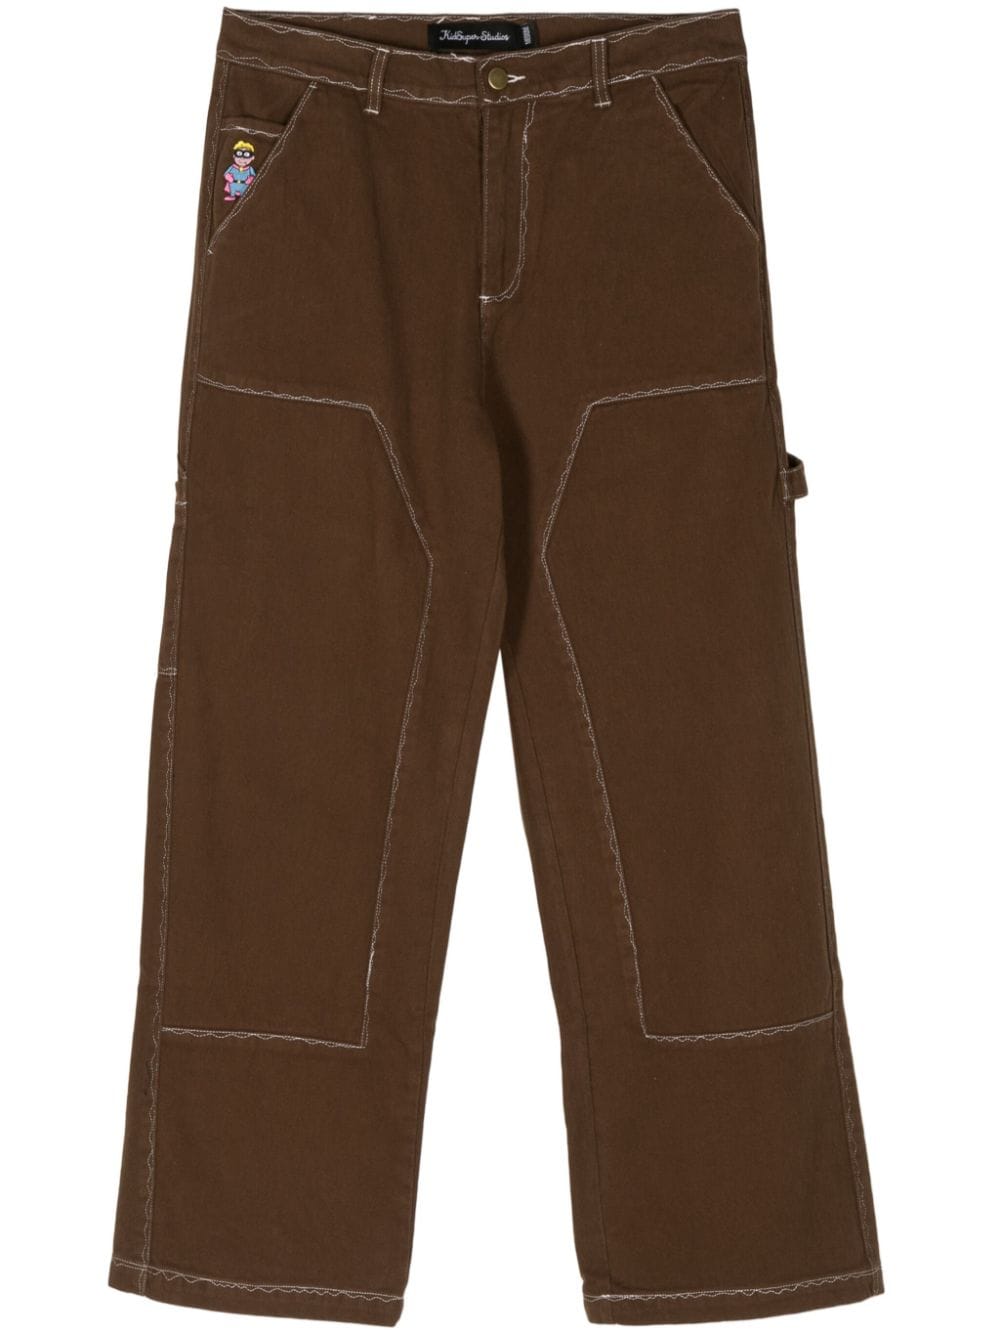 KidSuper Messy Stitched work-style trousers - Brown von KidSuper